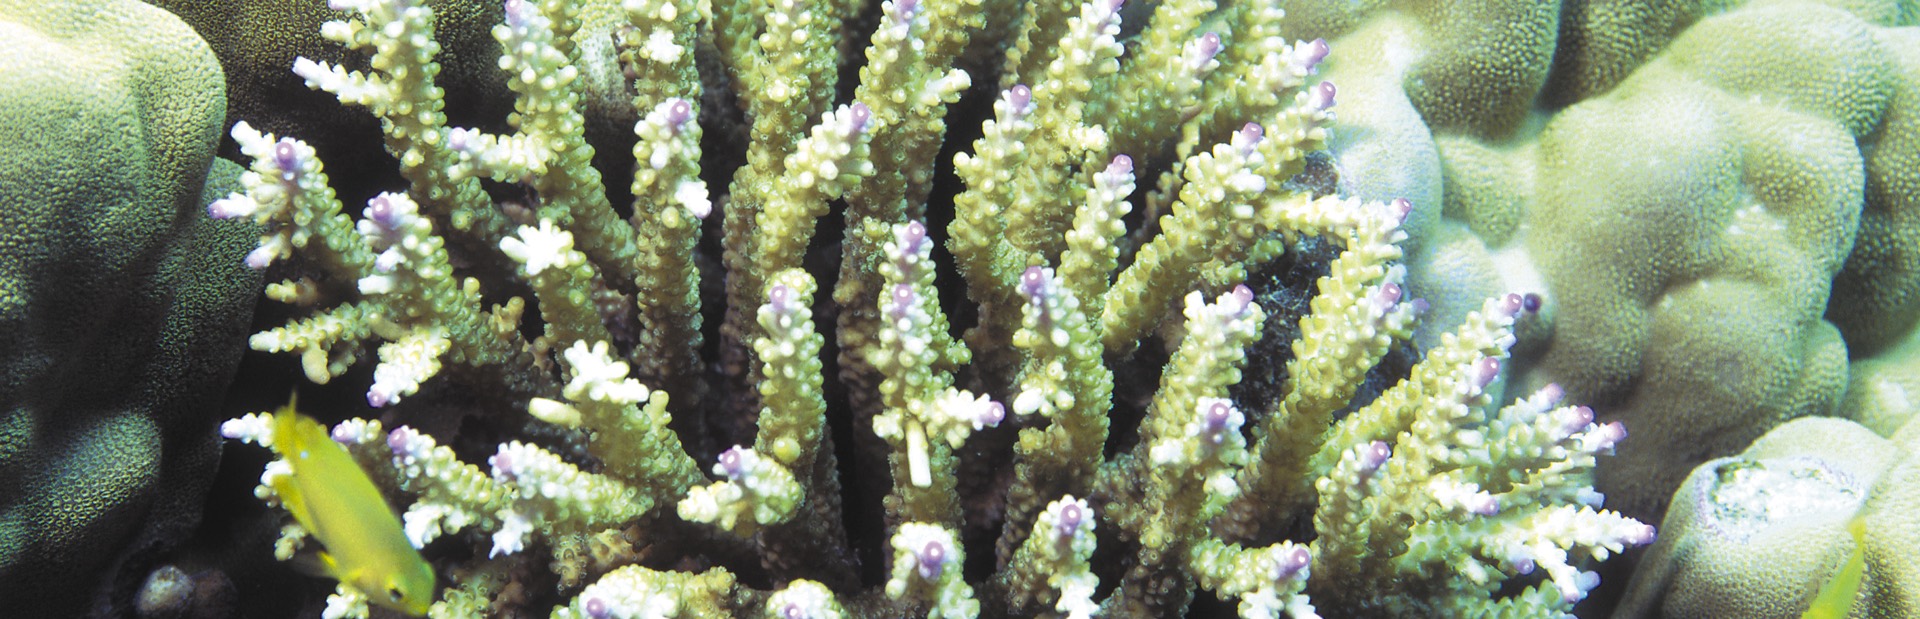 corail baie des citrons Nouméa